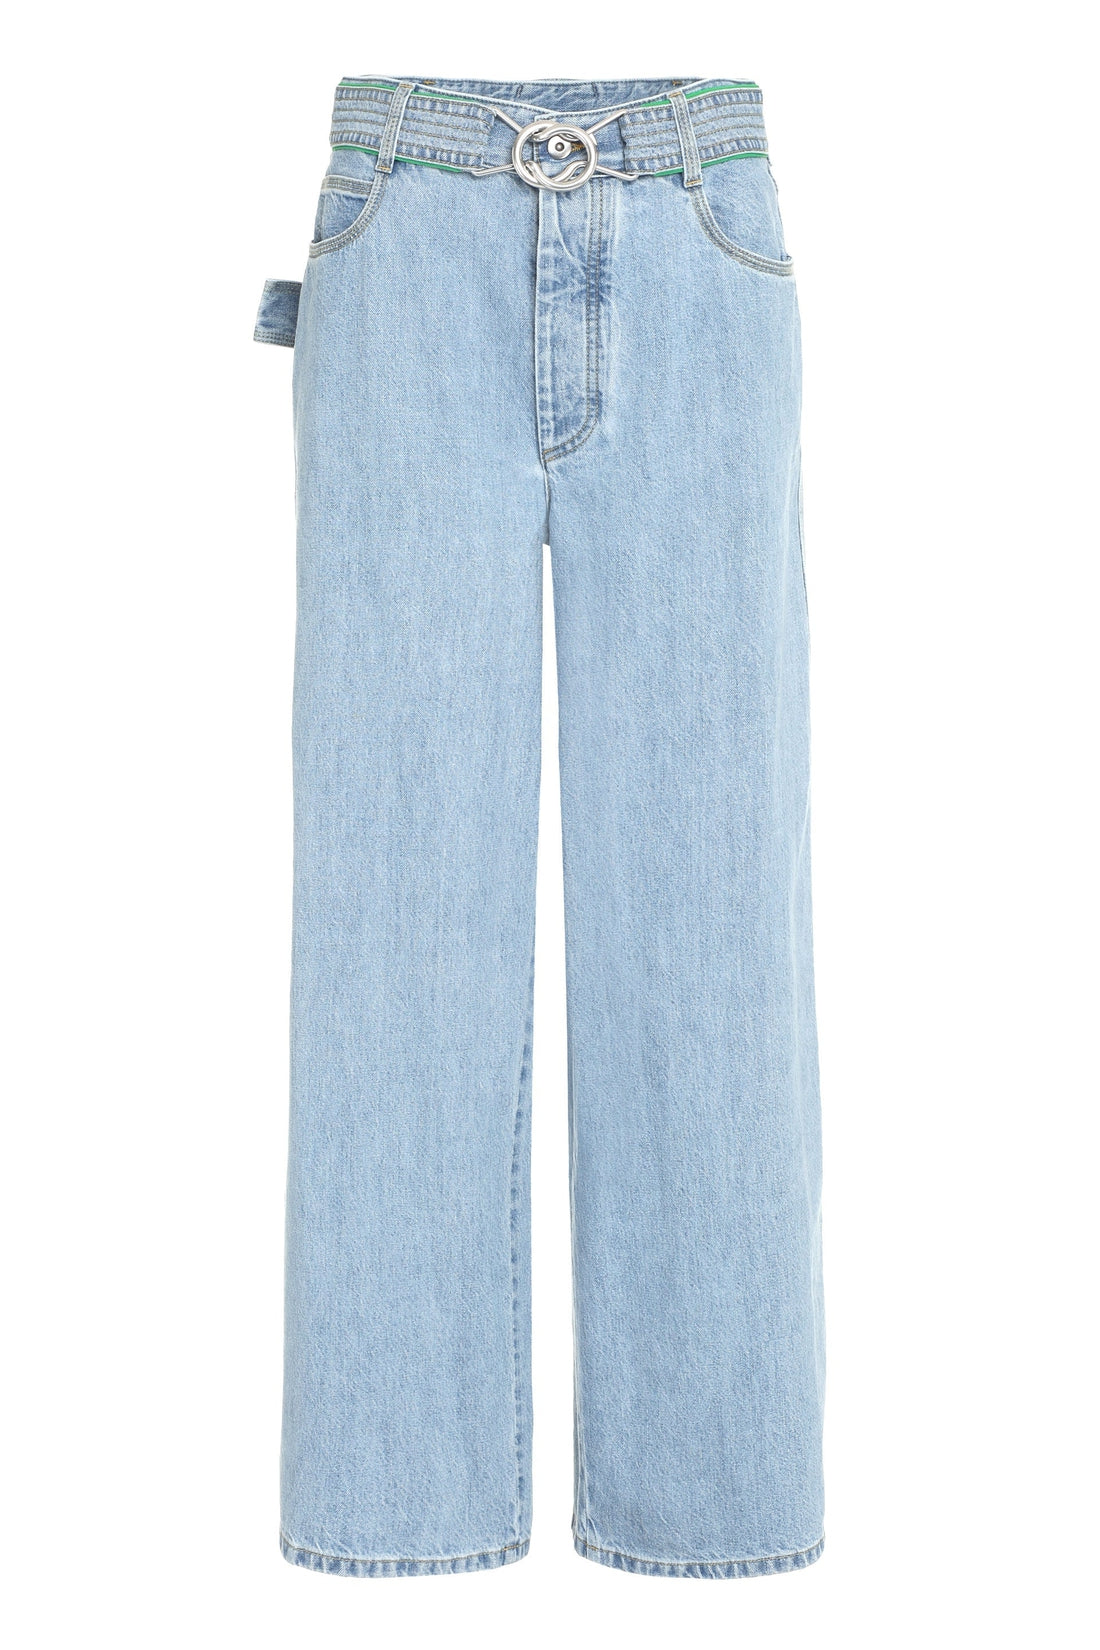 Bottega Veneta-OUTLET-SALE-Wide-leg jeans-ARCHIVIST